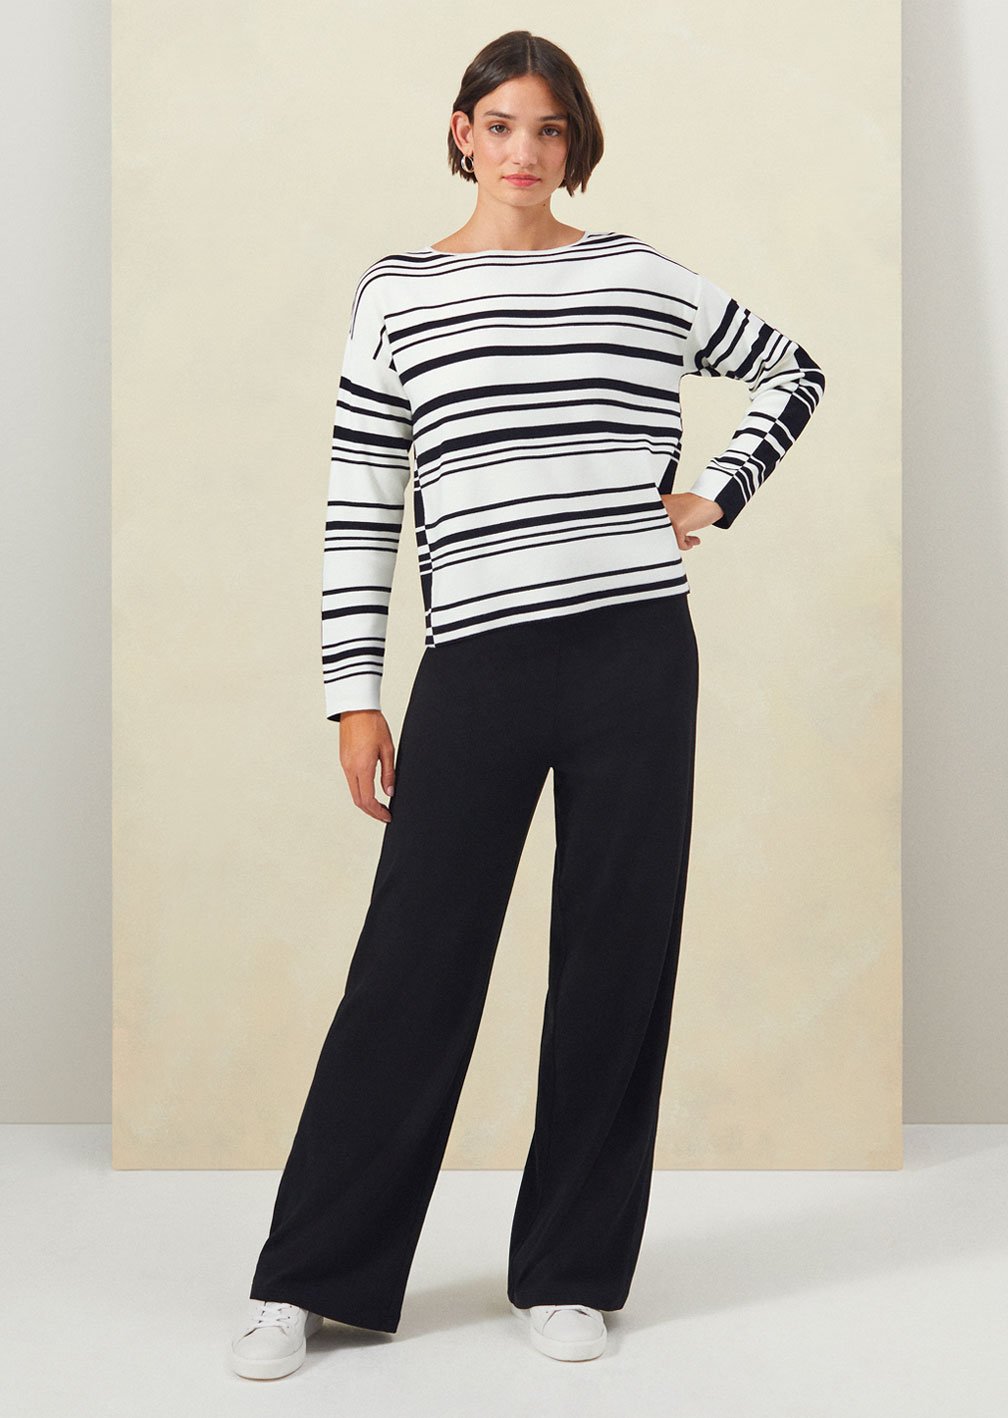 Model wears Hobbs Brigitte striped jumper with Dani black wide leg trousers.